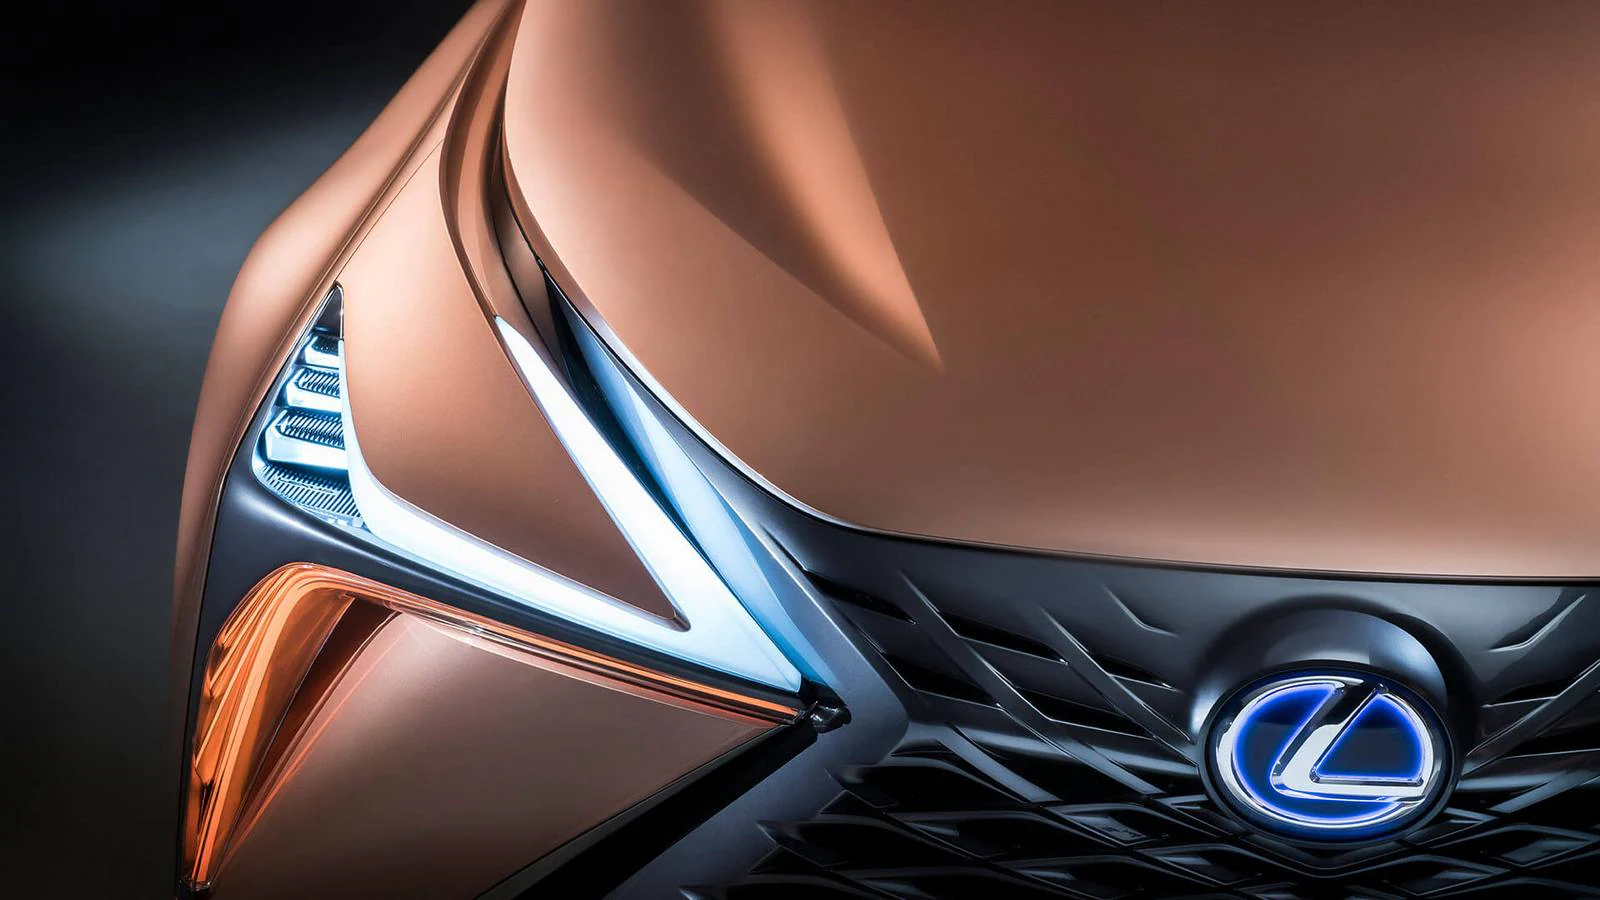 Lexus adelanta el futuro con el prototipo LF-1 Limitless, un modelo tipo 'crossover' que se encuadra en el tope de gama de vehículos de lujo y supondrá el buque insignia del fabricante nipón.